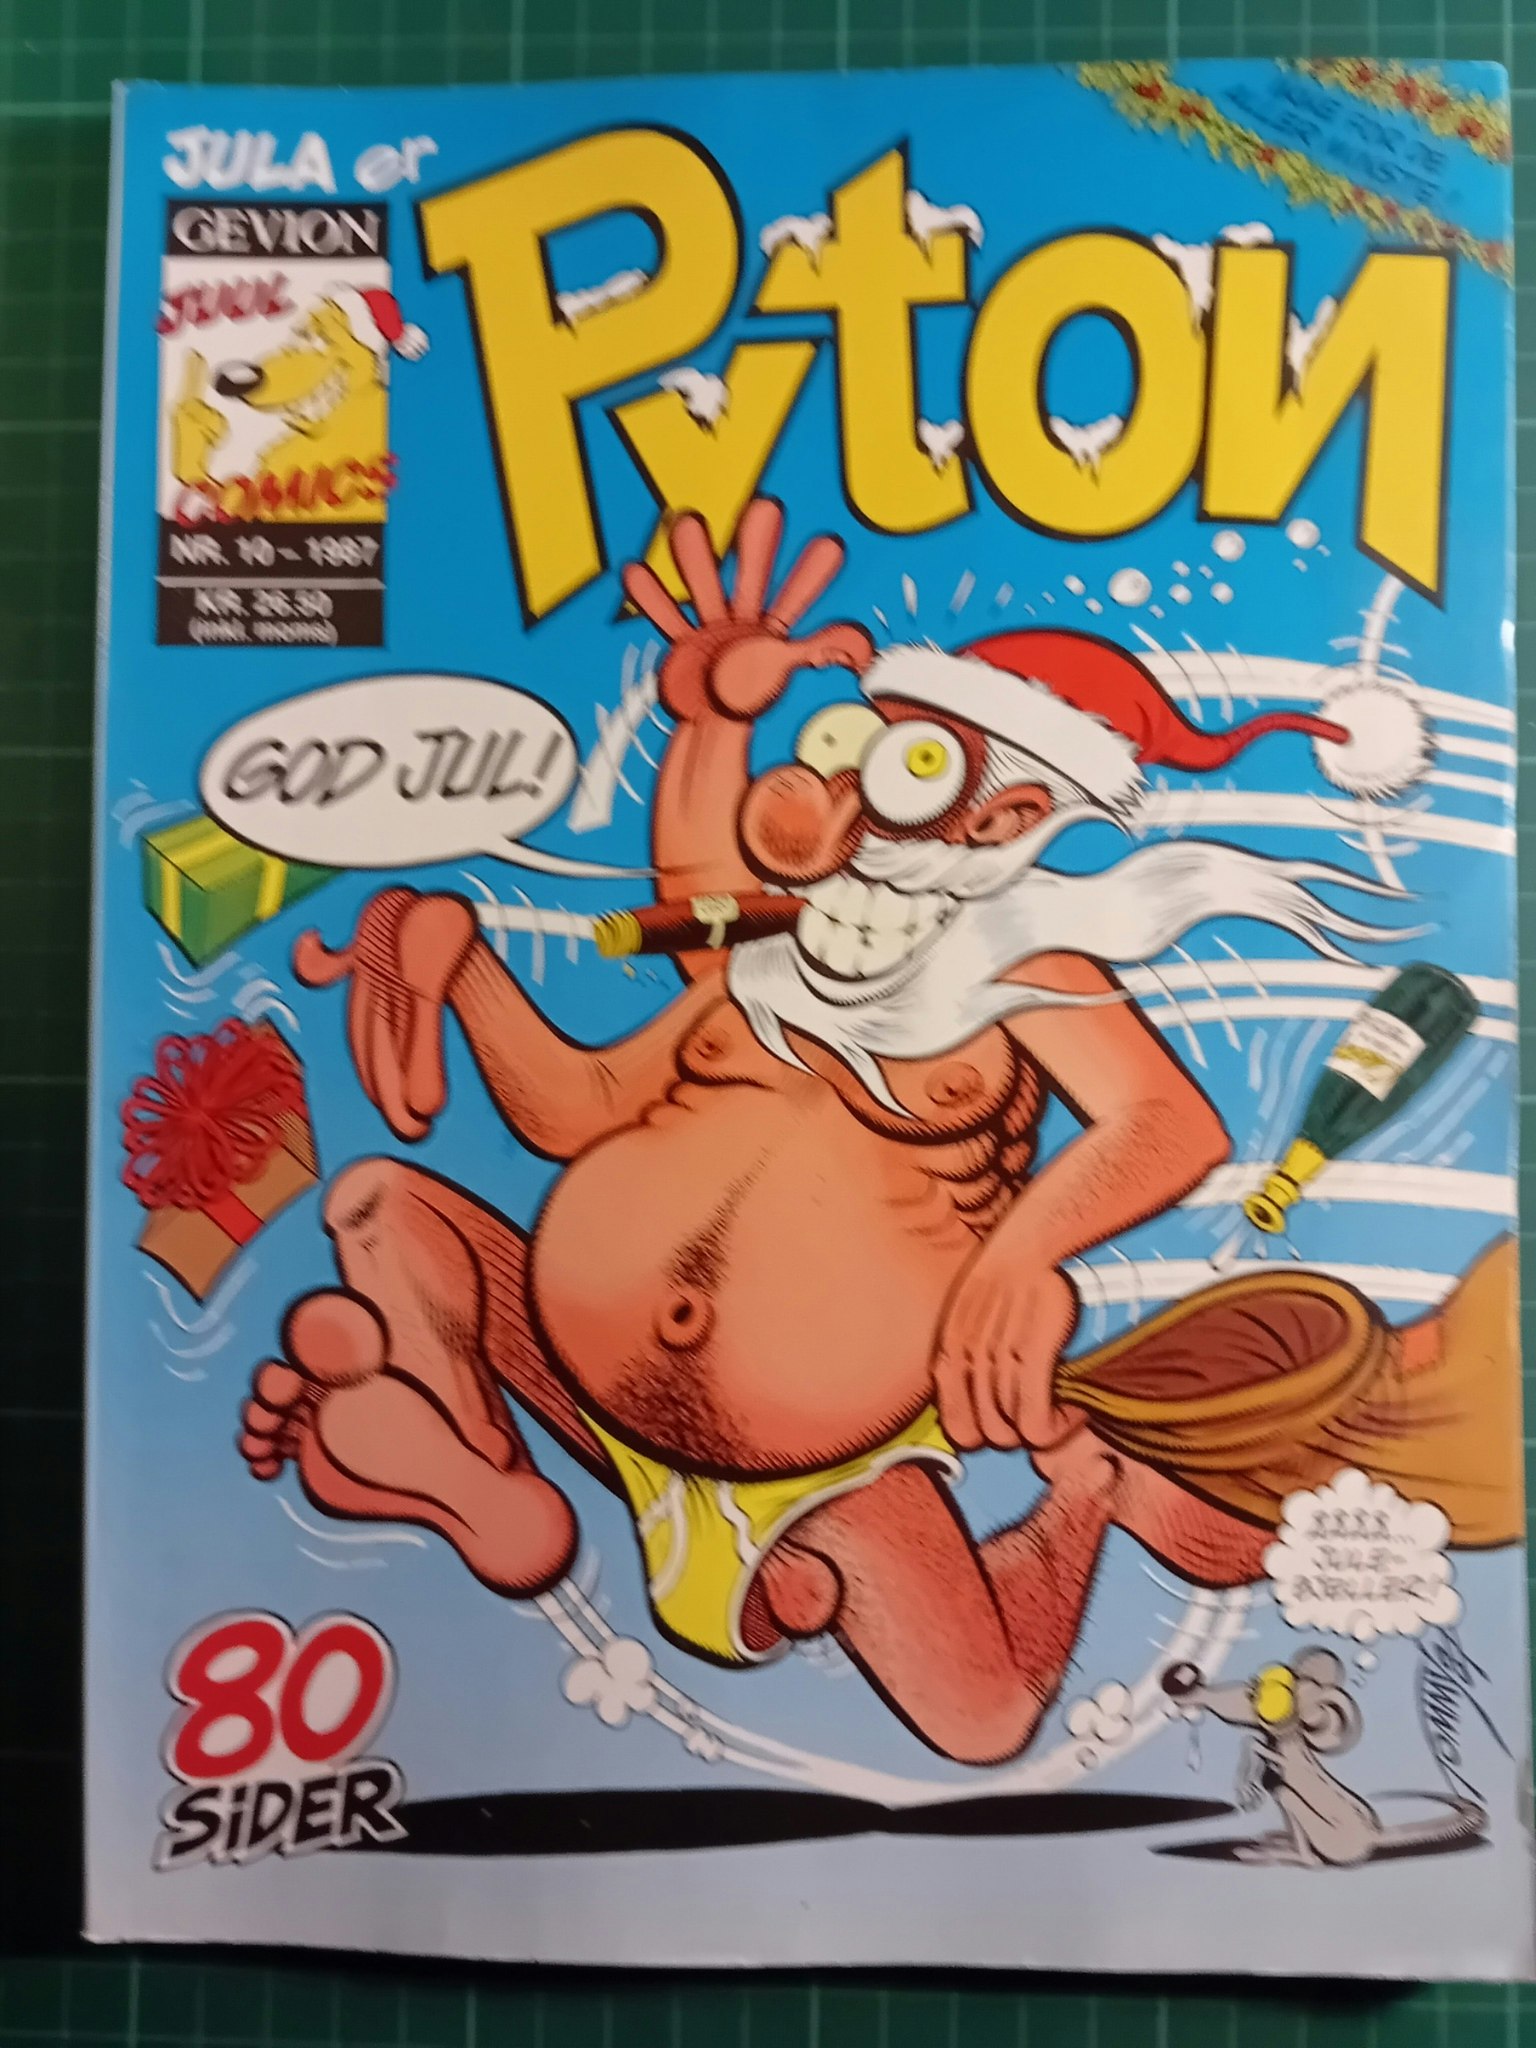 Pyton 1987 - 10